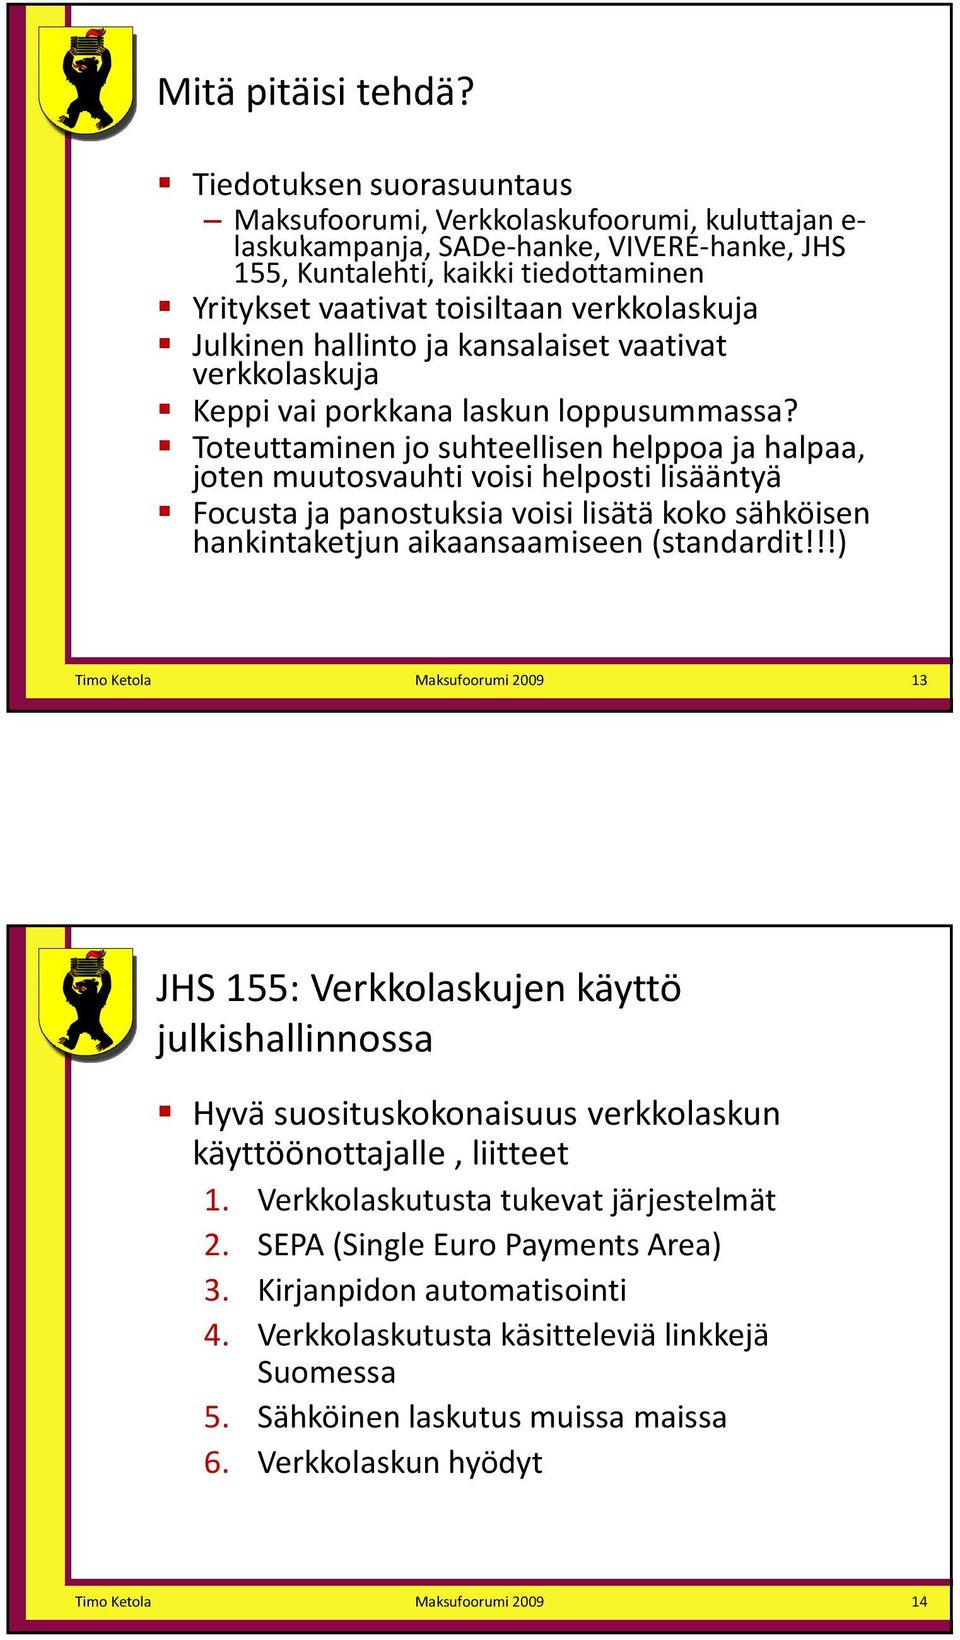 verkkolaskuja Julkinen hallinto ja kansalaiset vaativat verkkolaskuja Keppi vai porkkana laskun loppusummassa?